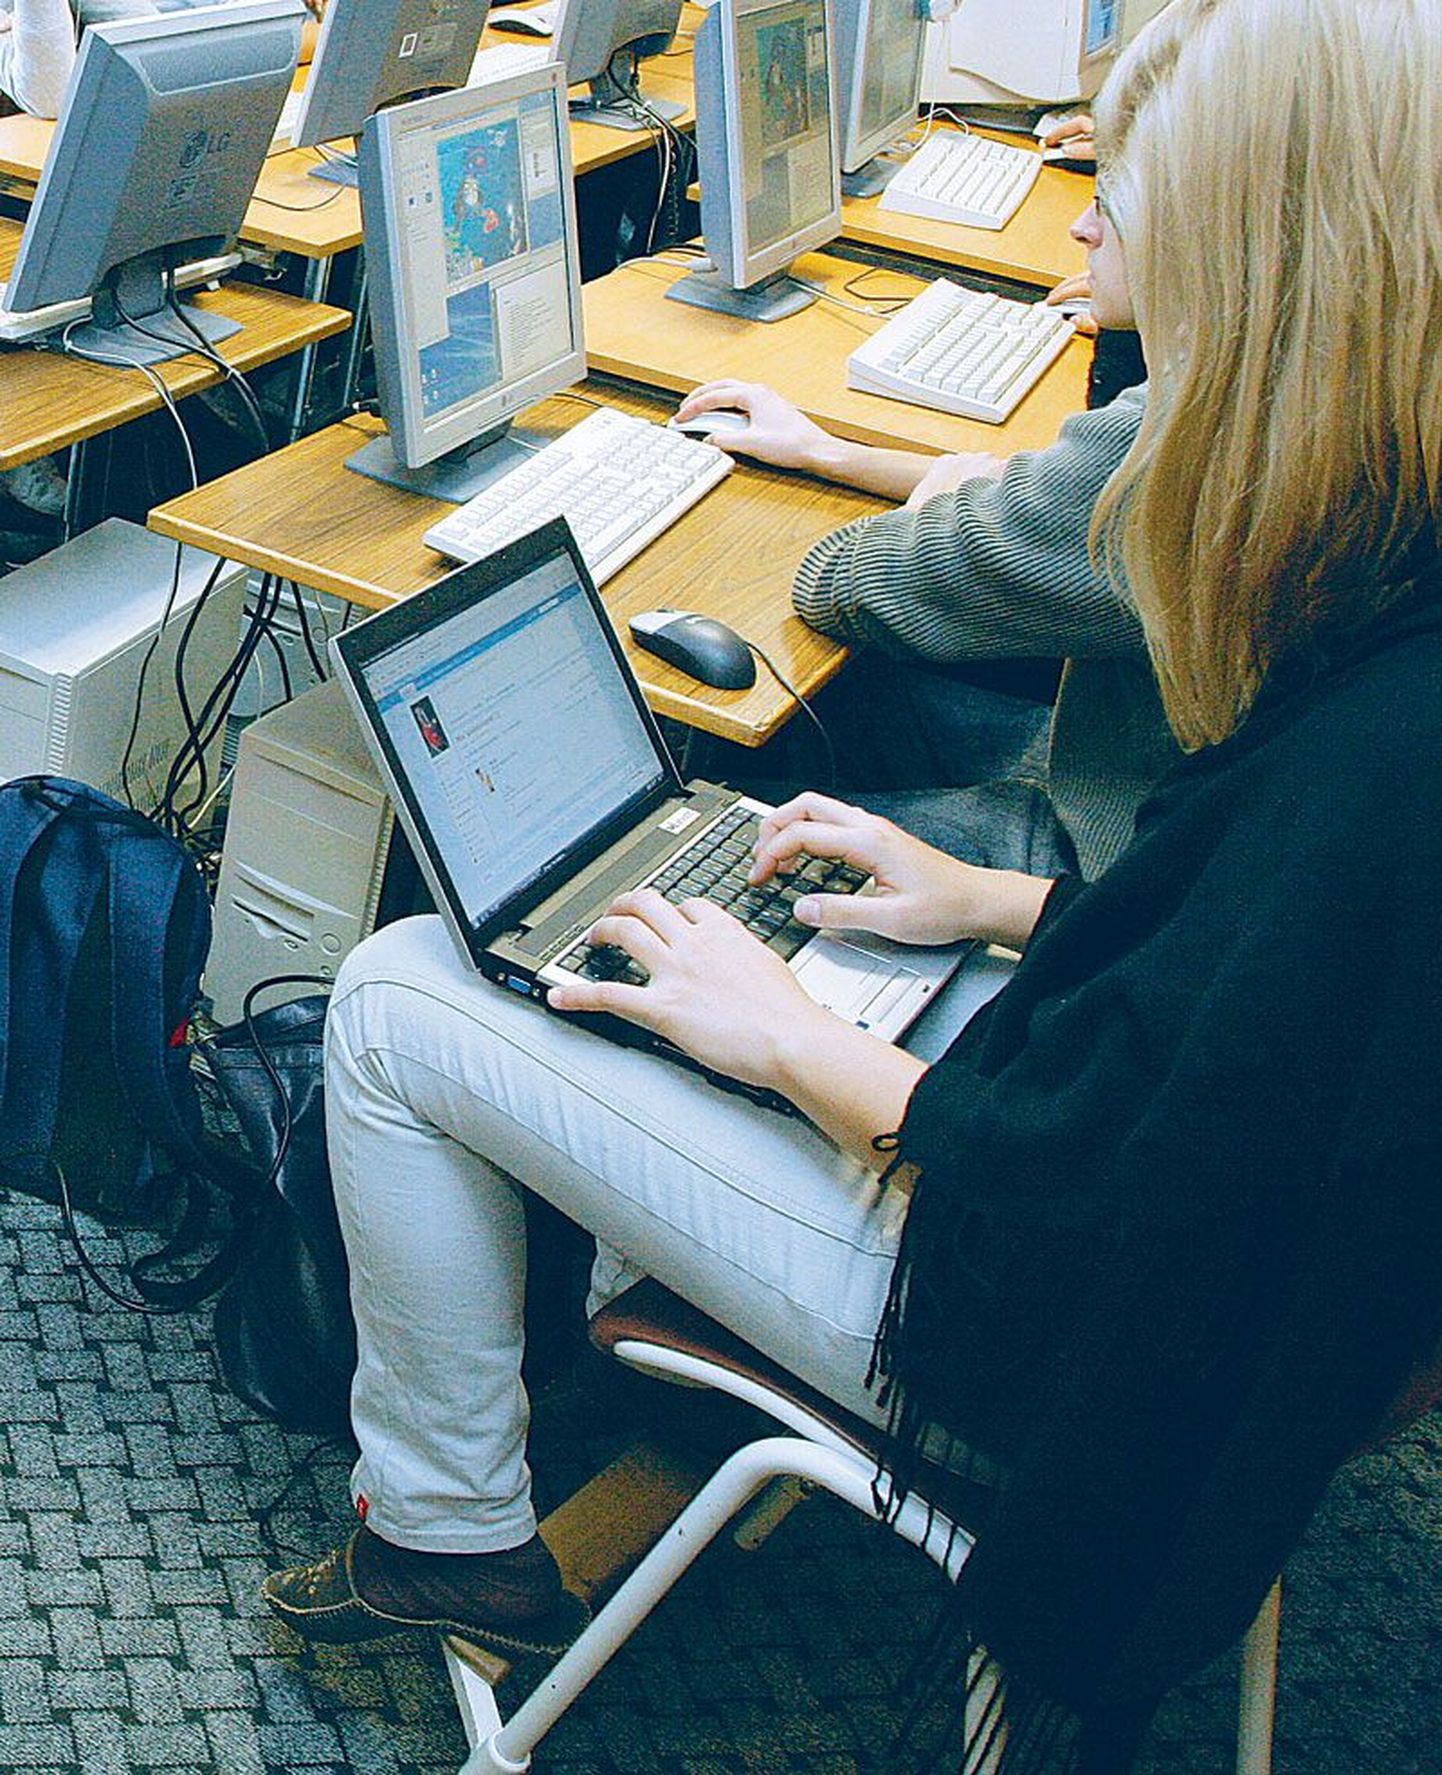 Tartu Ülikooli teadlaste tehtud uuringust selgus, et ehkki kooliõpilastele arvutite jagamisel on häid külgi, tekitab see samas probleeme nii õpilastele kui ka õpetajatele.